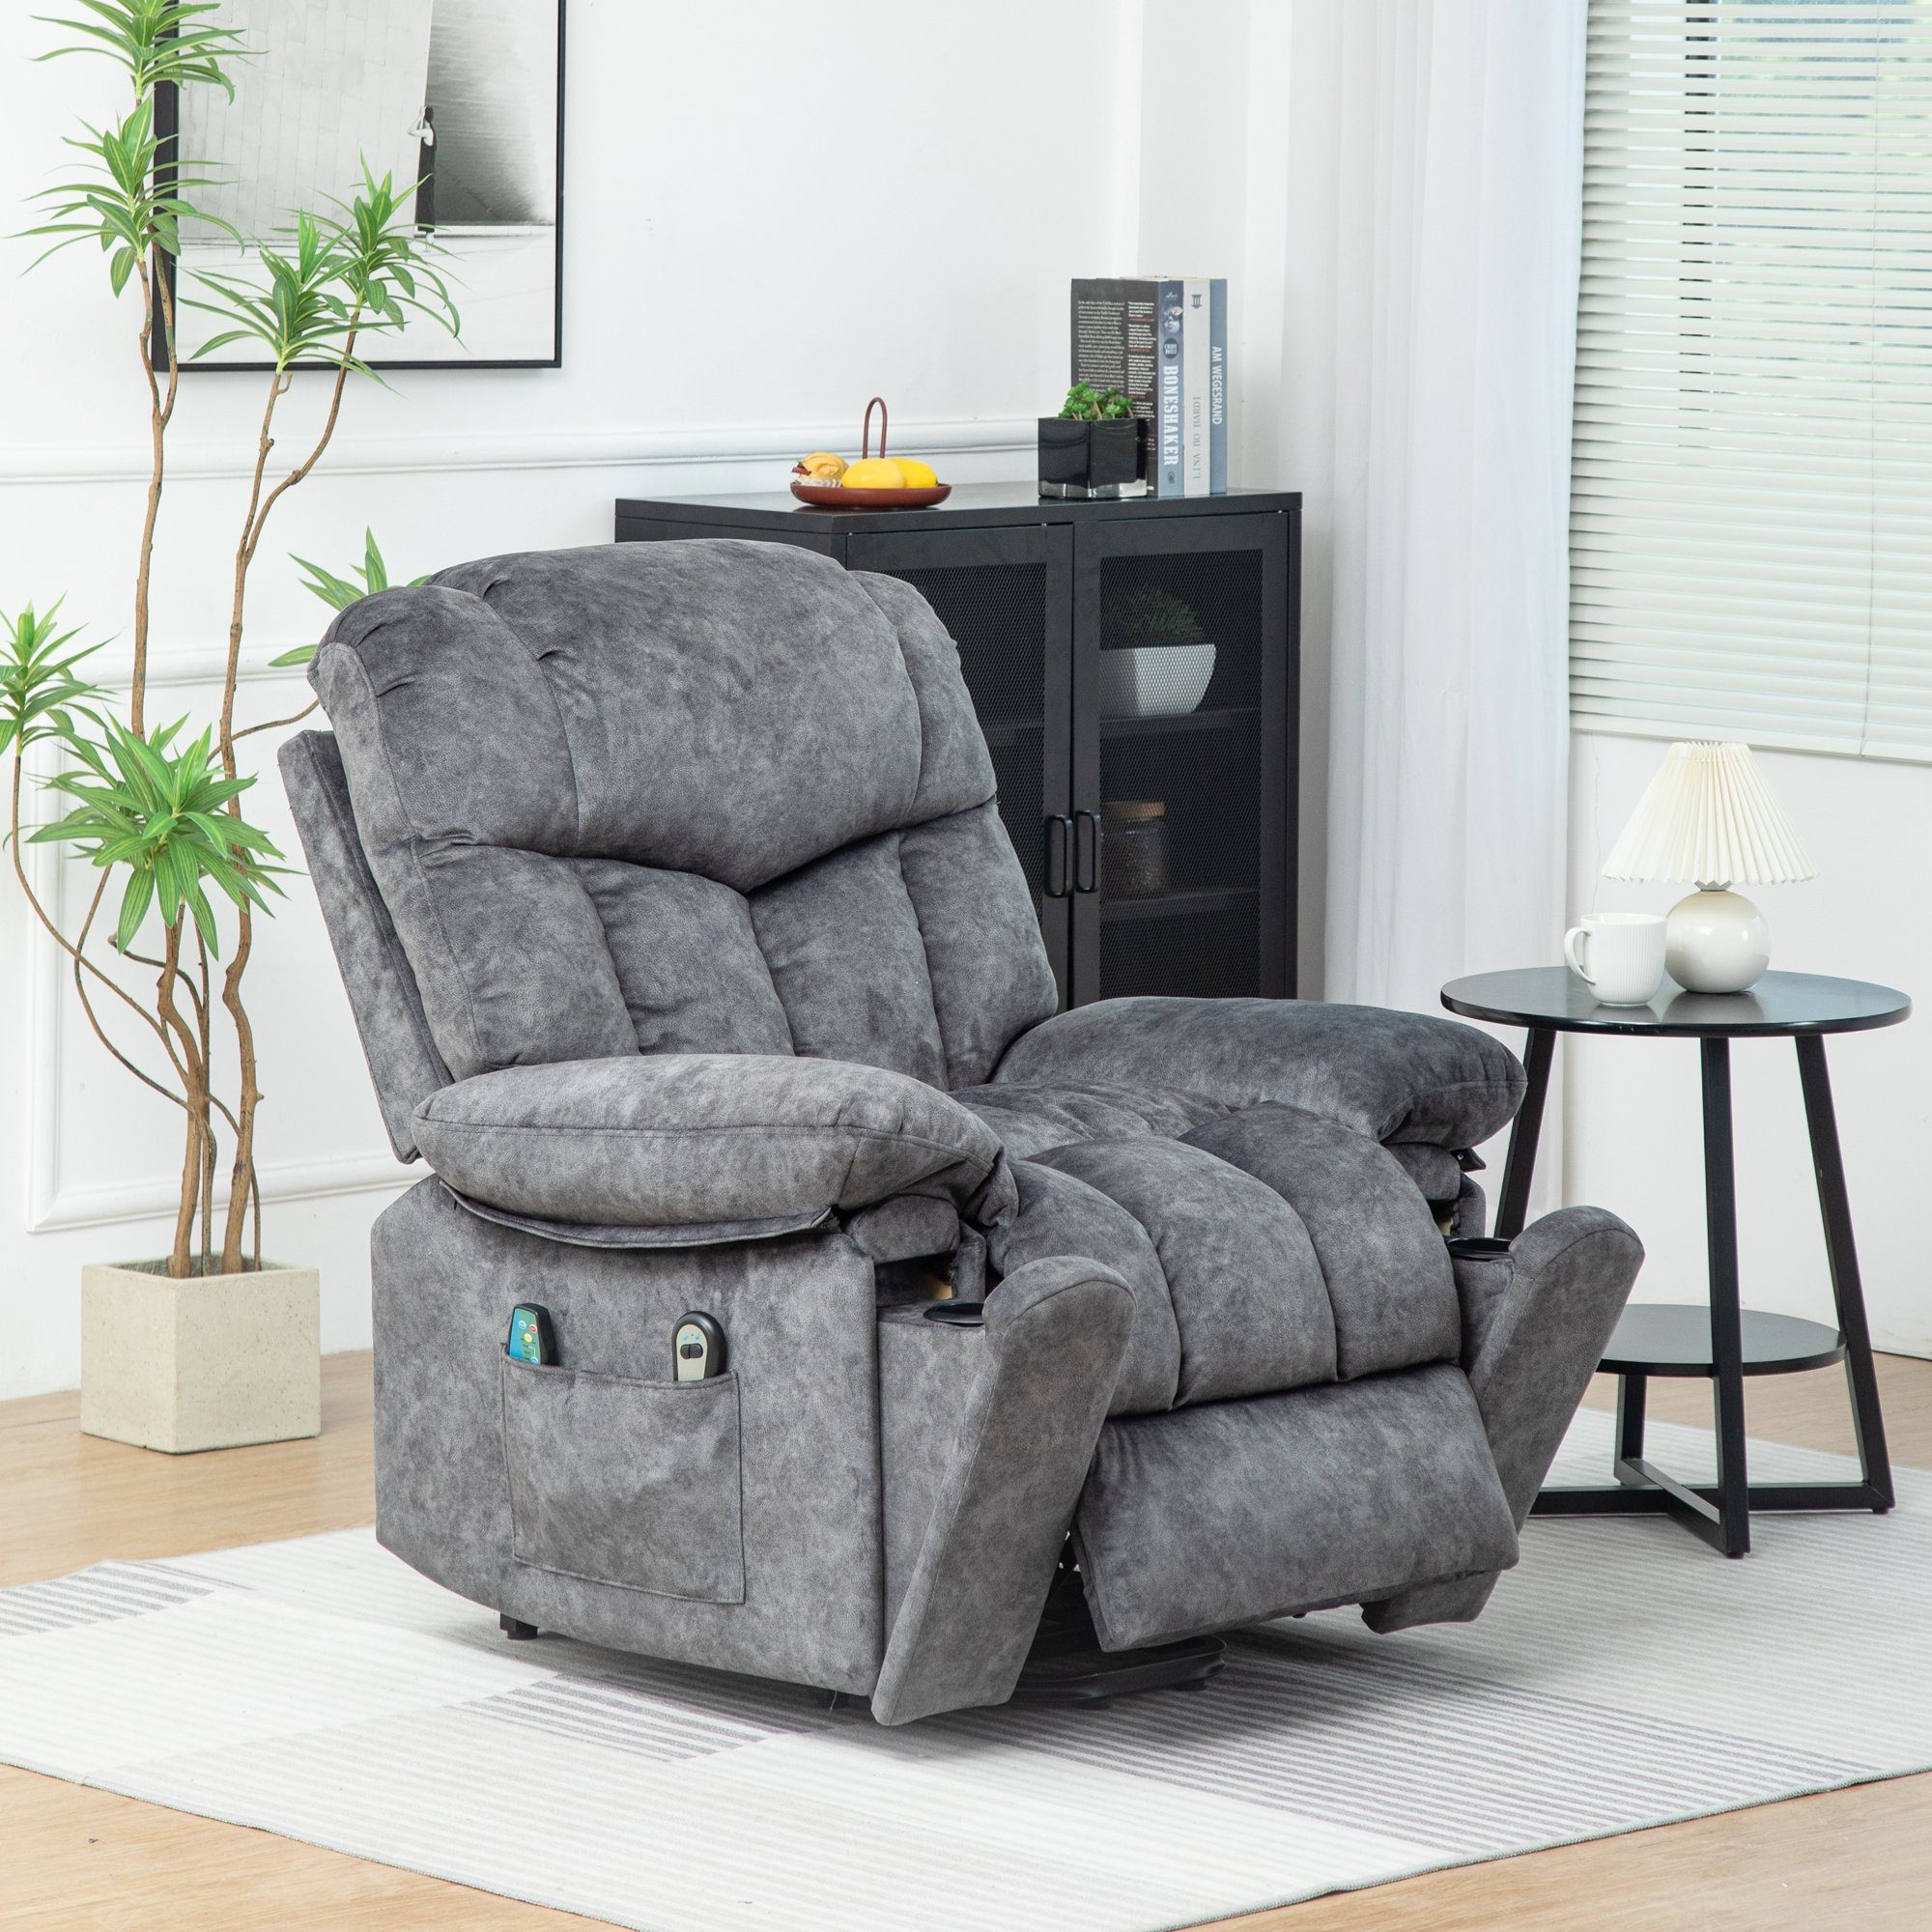 Merax TV-Sessel Elektrisch Relaxsessel mit Aufstehhilfe und Liegefunktion, Fernsehsessel mit relaxfunktion, Wärme und Vibraiton, Massagesessel Grau | Fernsehsessel